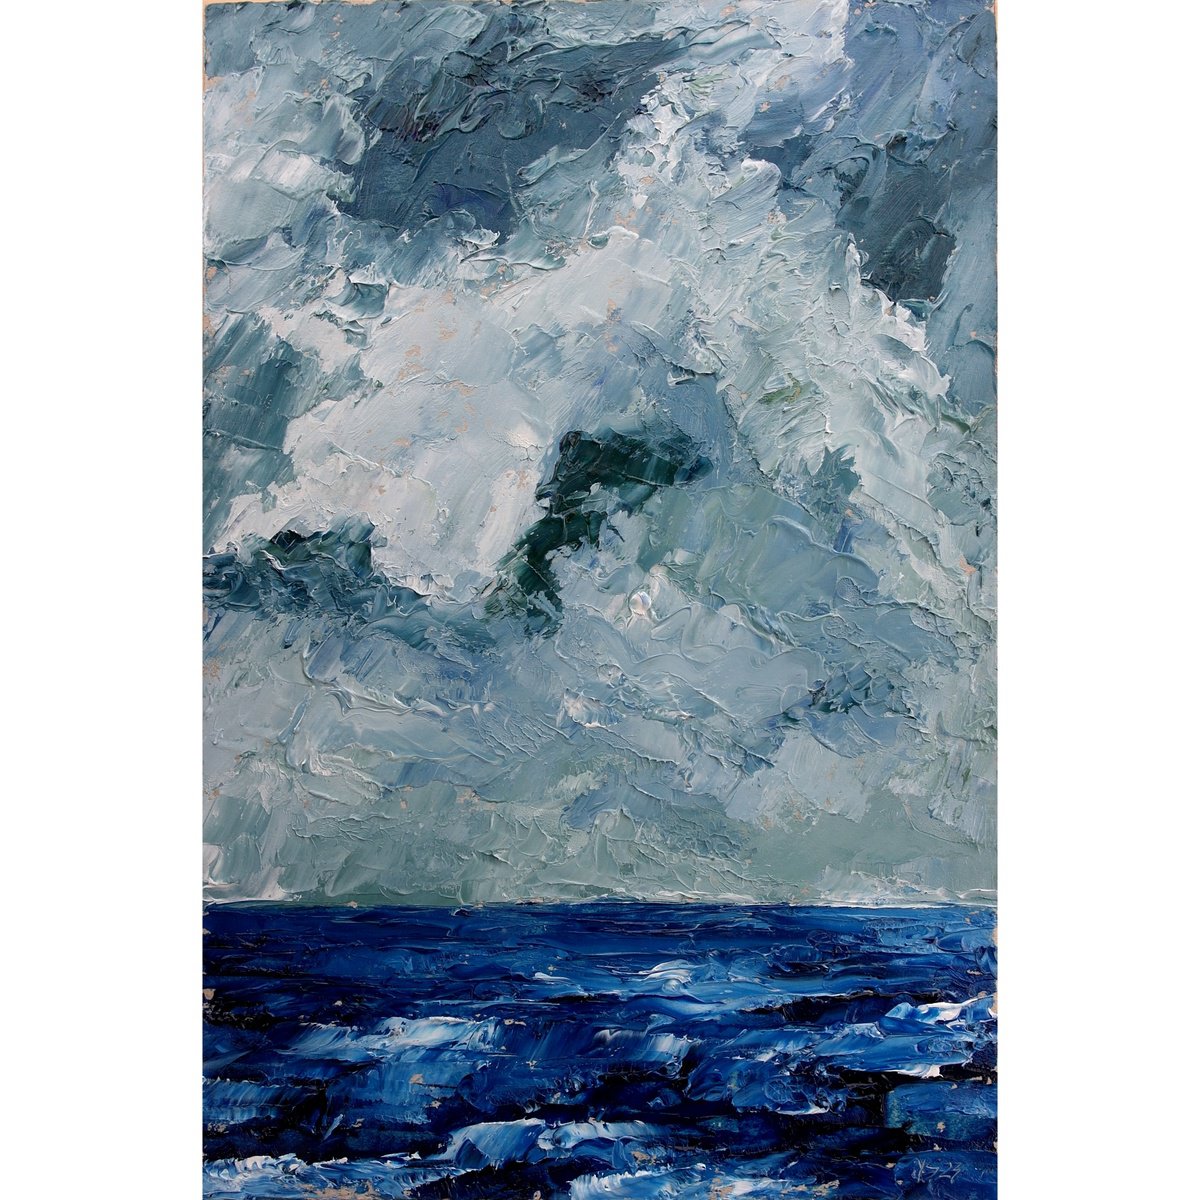 Seascape, Stormy Skies by Juri Semjonov